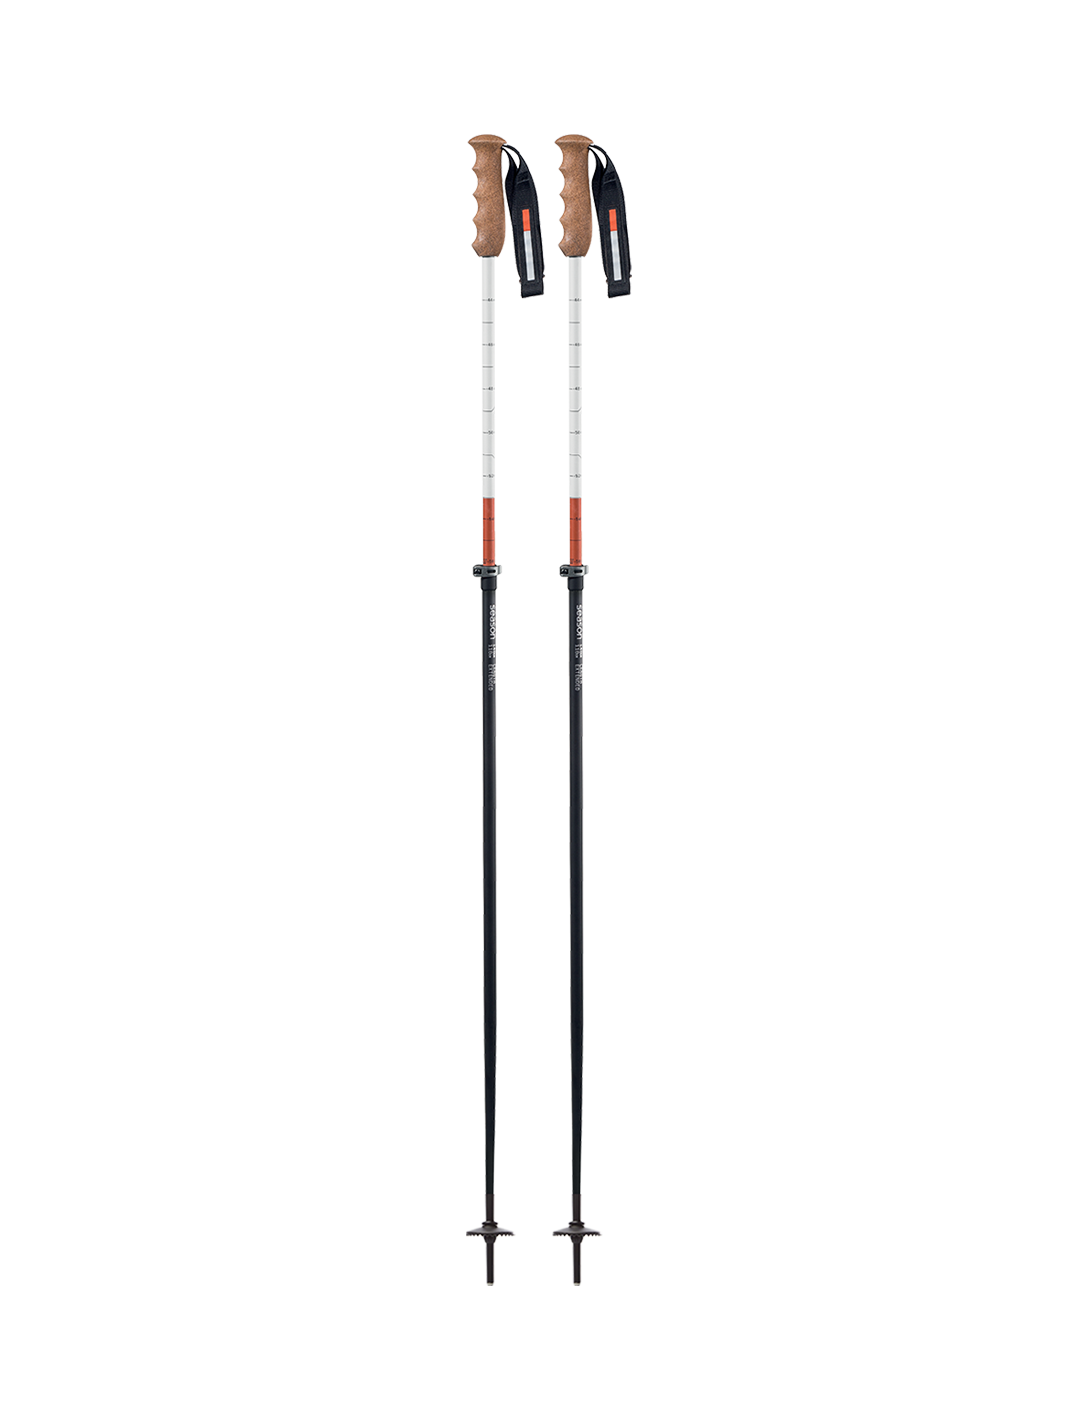 Adjustable Ski Poles